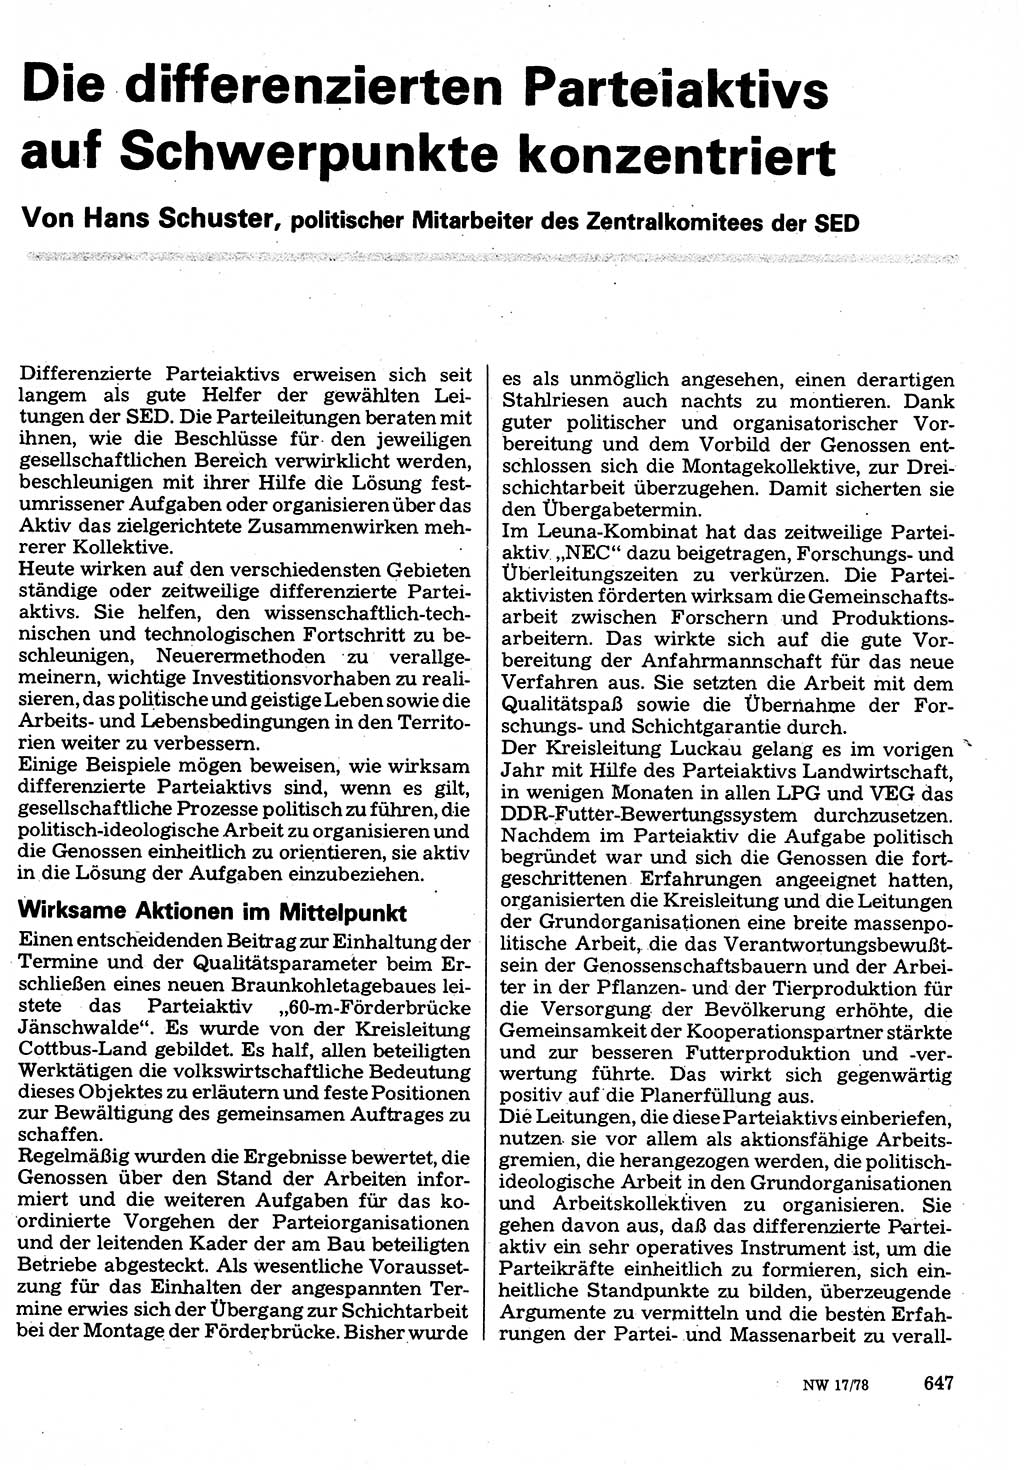 Neuer Weg (NW), Organ des Zentralkomitees (ZK) der SED (Sozialistische Einheitspartei Deutschlands) für Fragen des Parteilebens, 33. Jahrgang [Deutsche Demokratische Republik (DDR)] 1978, Seite 647 (NW ZK SED DDR 1978, S. 647)